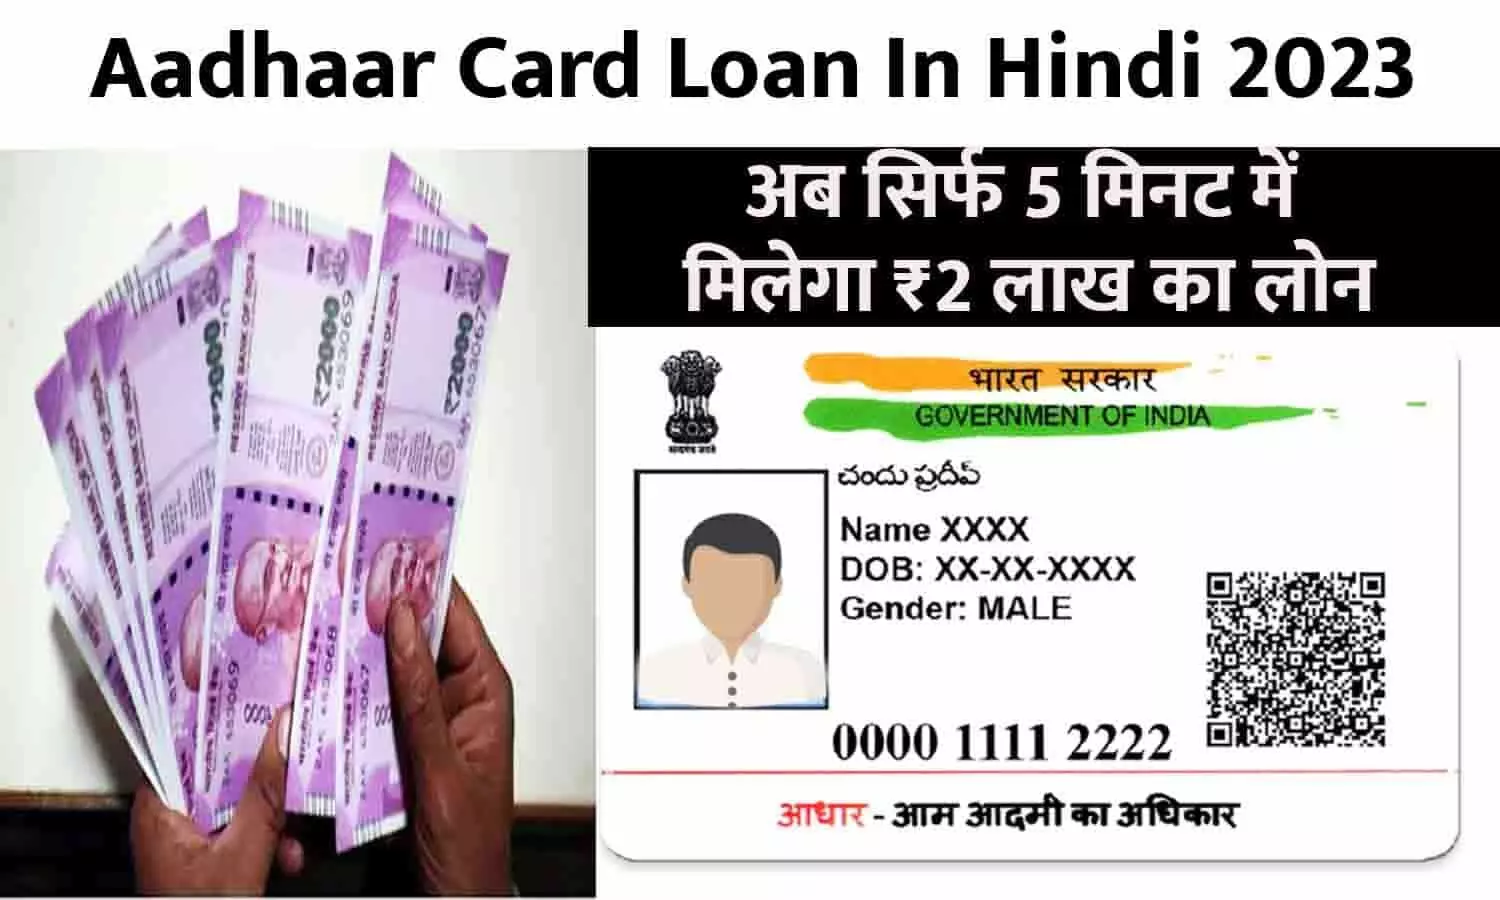 Aadhaar Card Loan In Hindi 2023